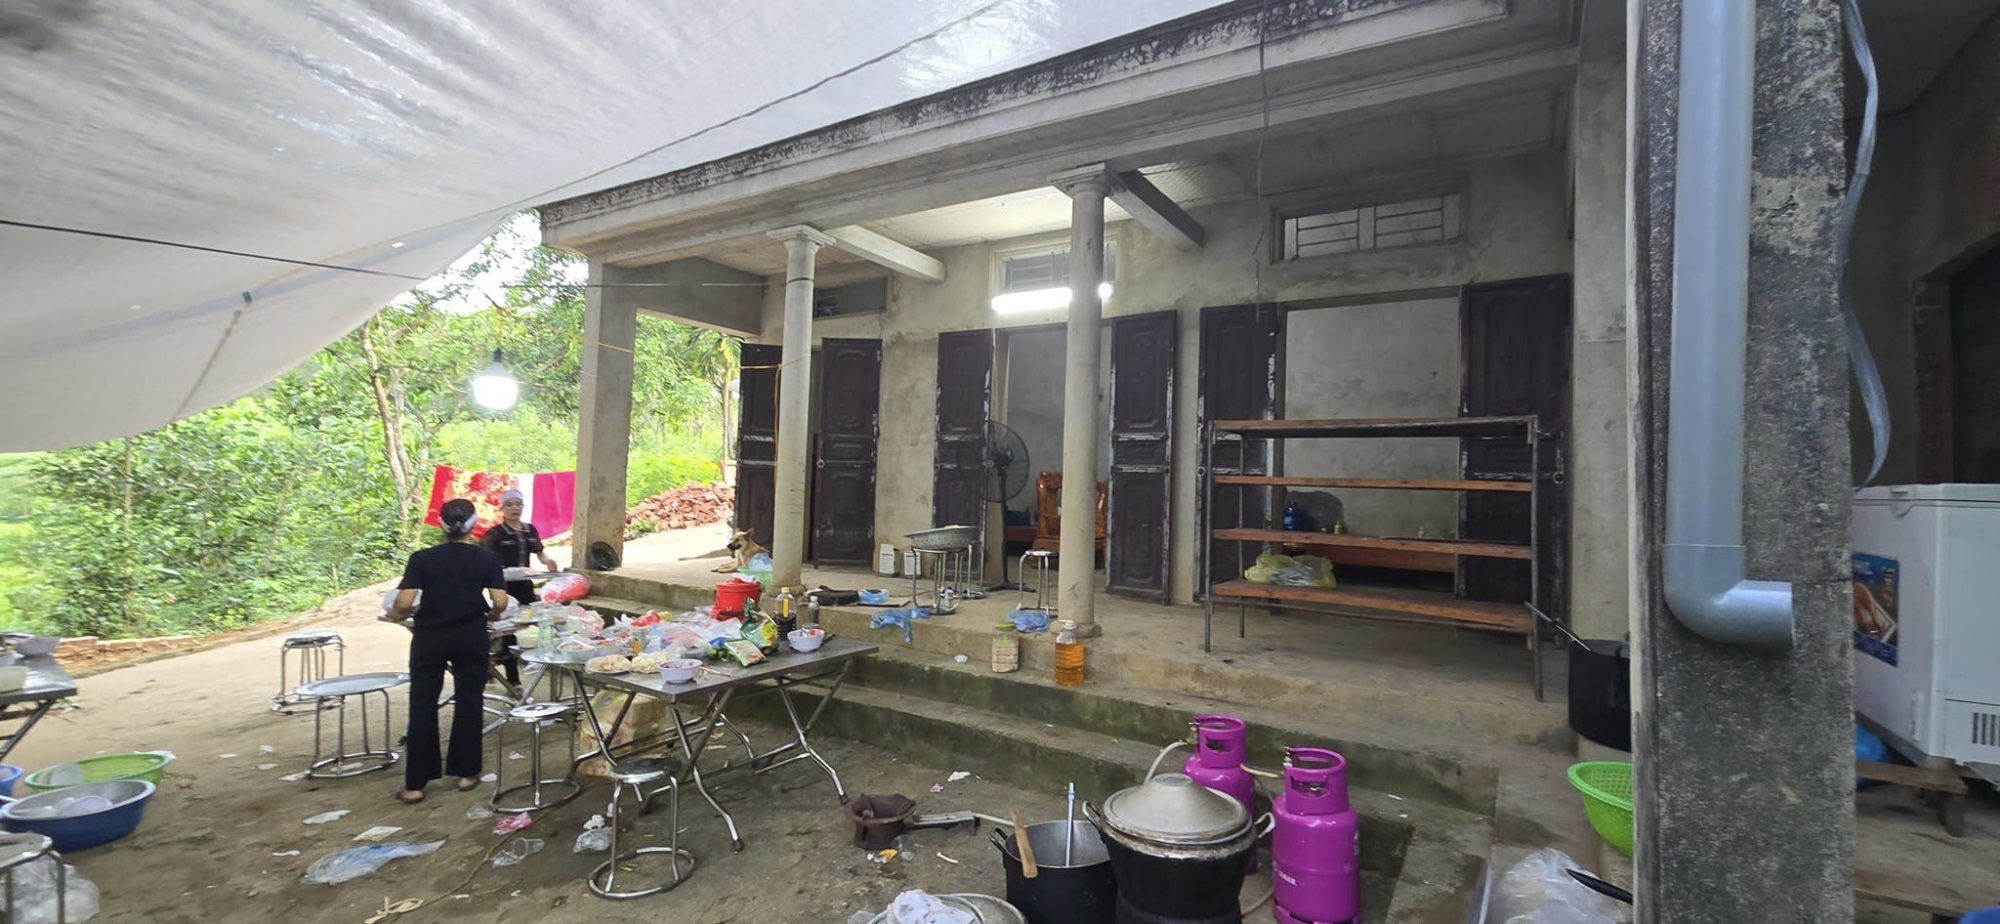   Không khí tang thương bao trùm lên căn nhà nhỏ xơ xác - Ảnh: LS Nguyễn Anh Thơm